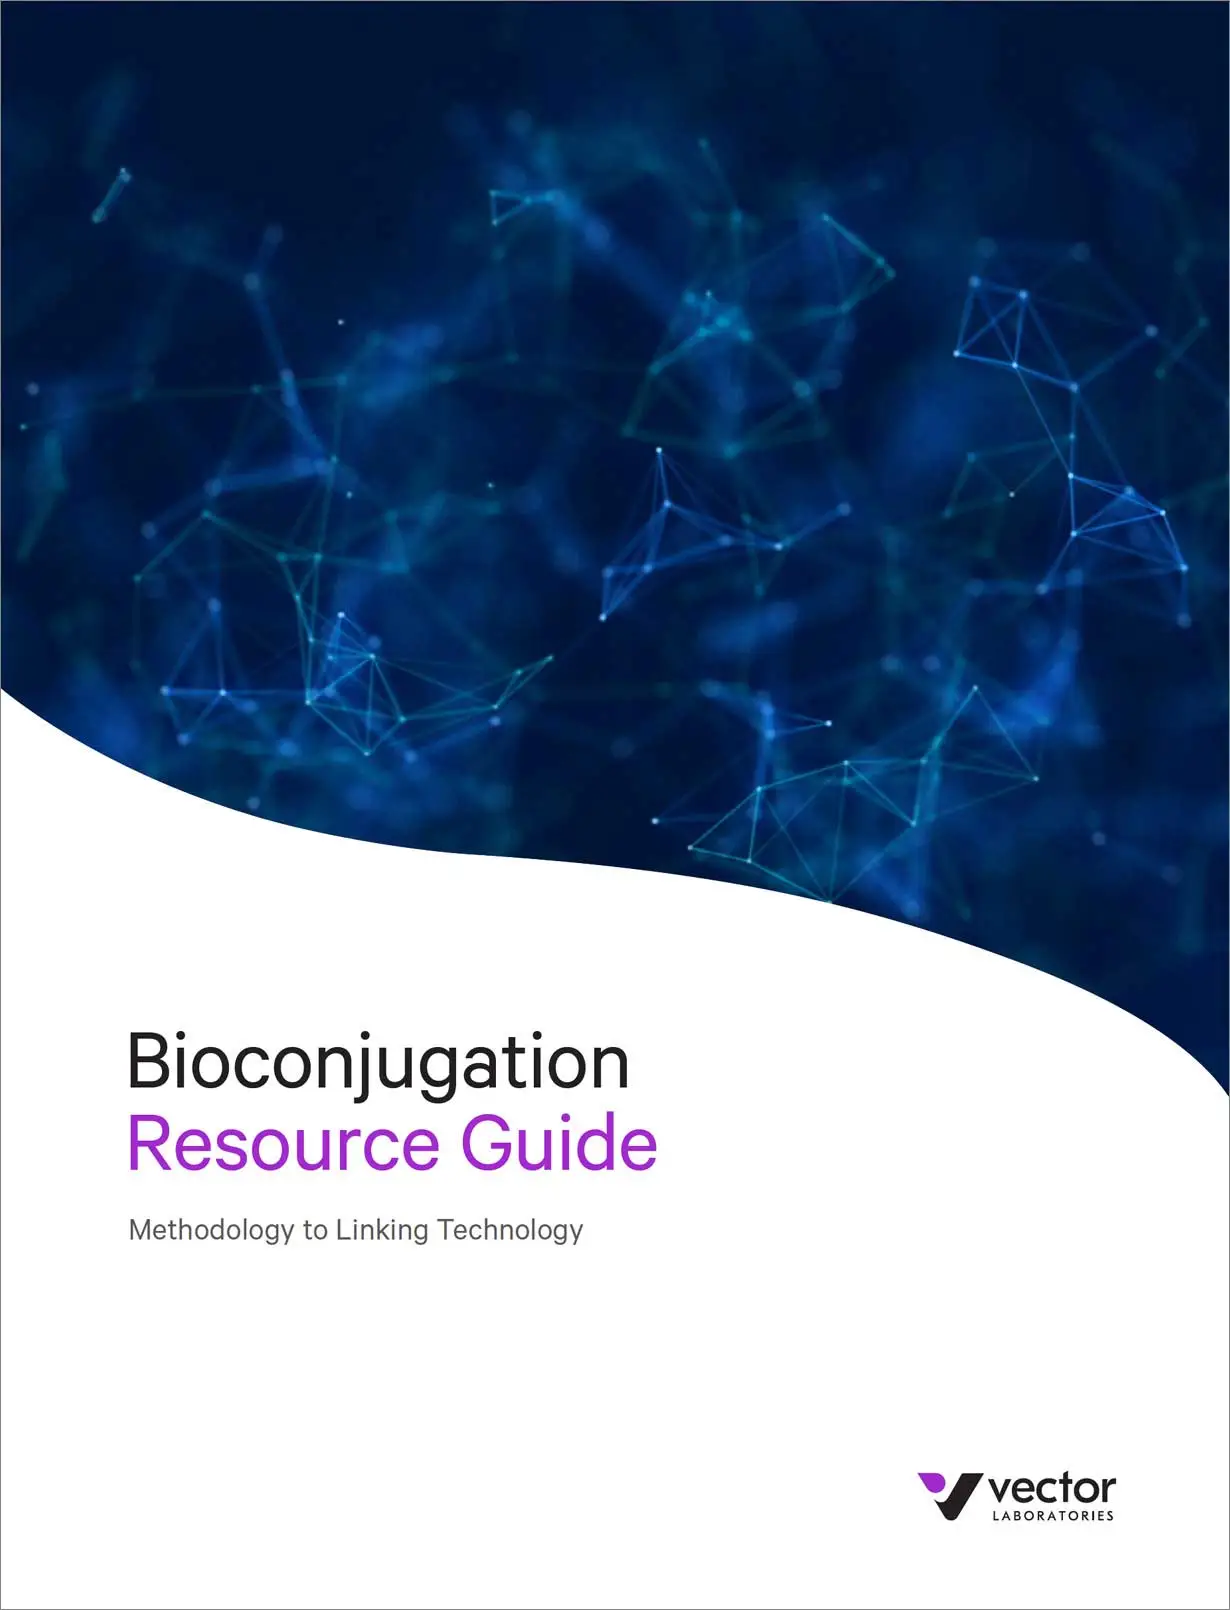 BioCon Guide Cover Image